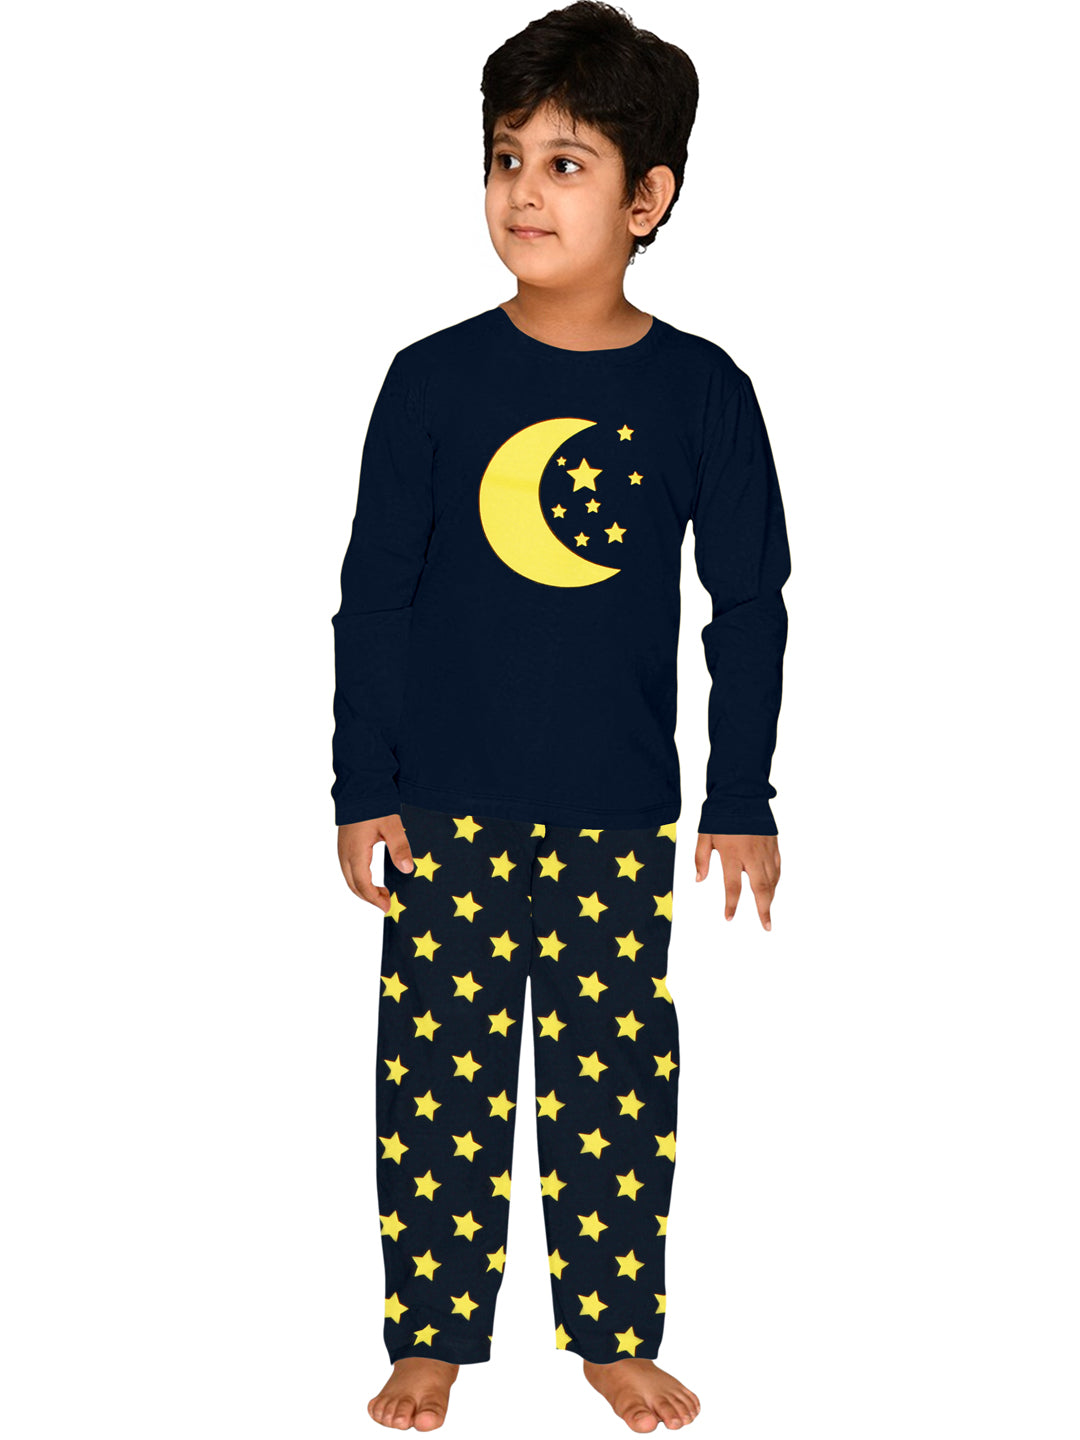 Kids Full Sleeves Moon & Star Print Night Suit